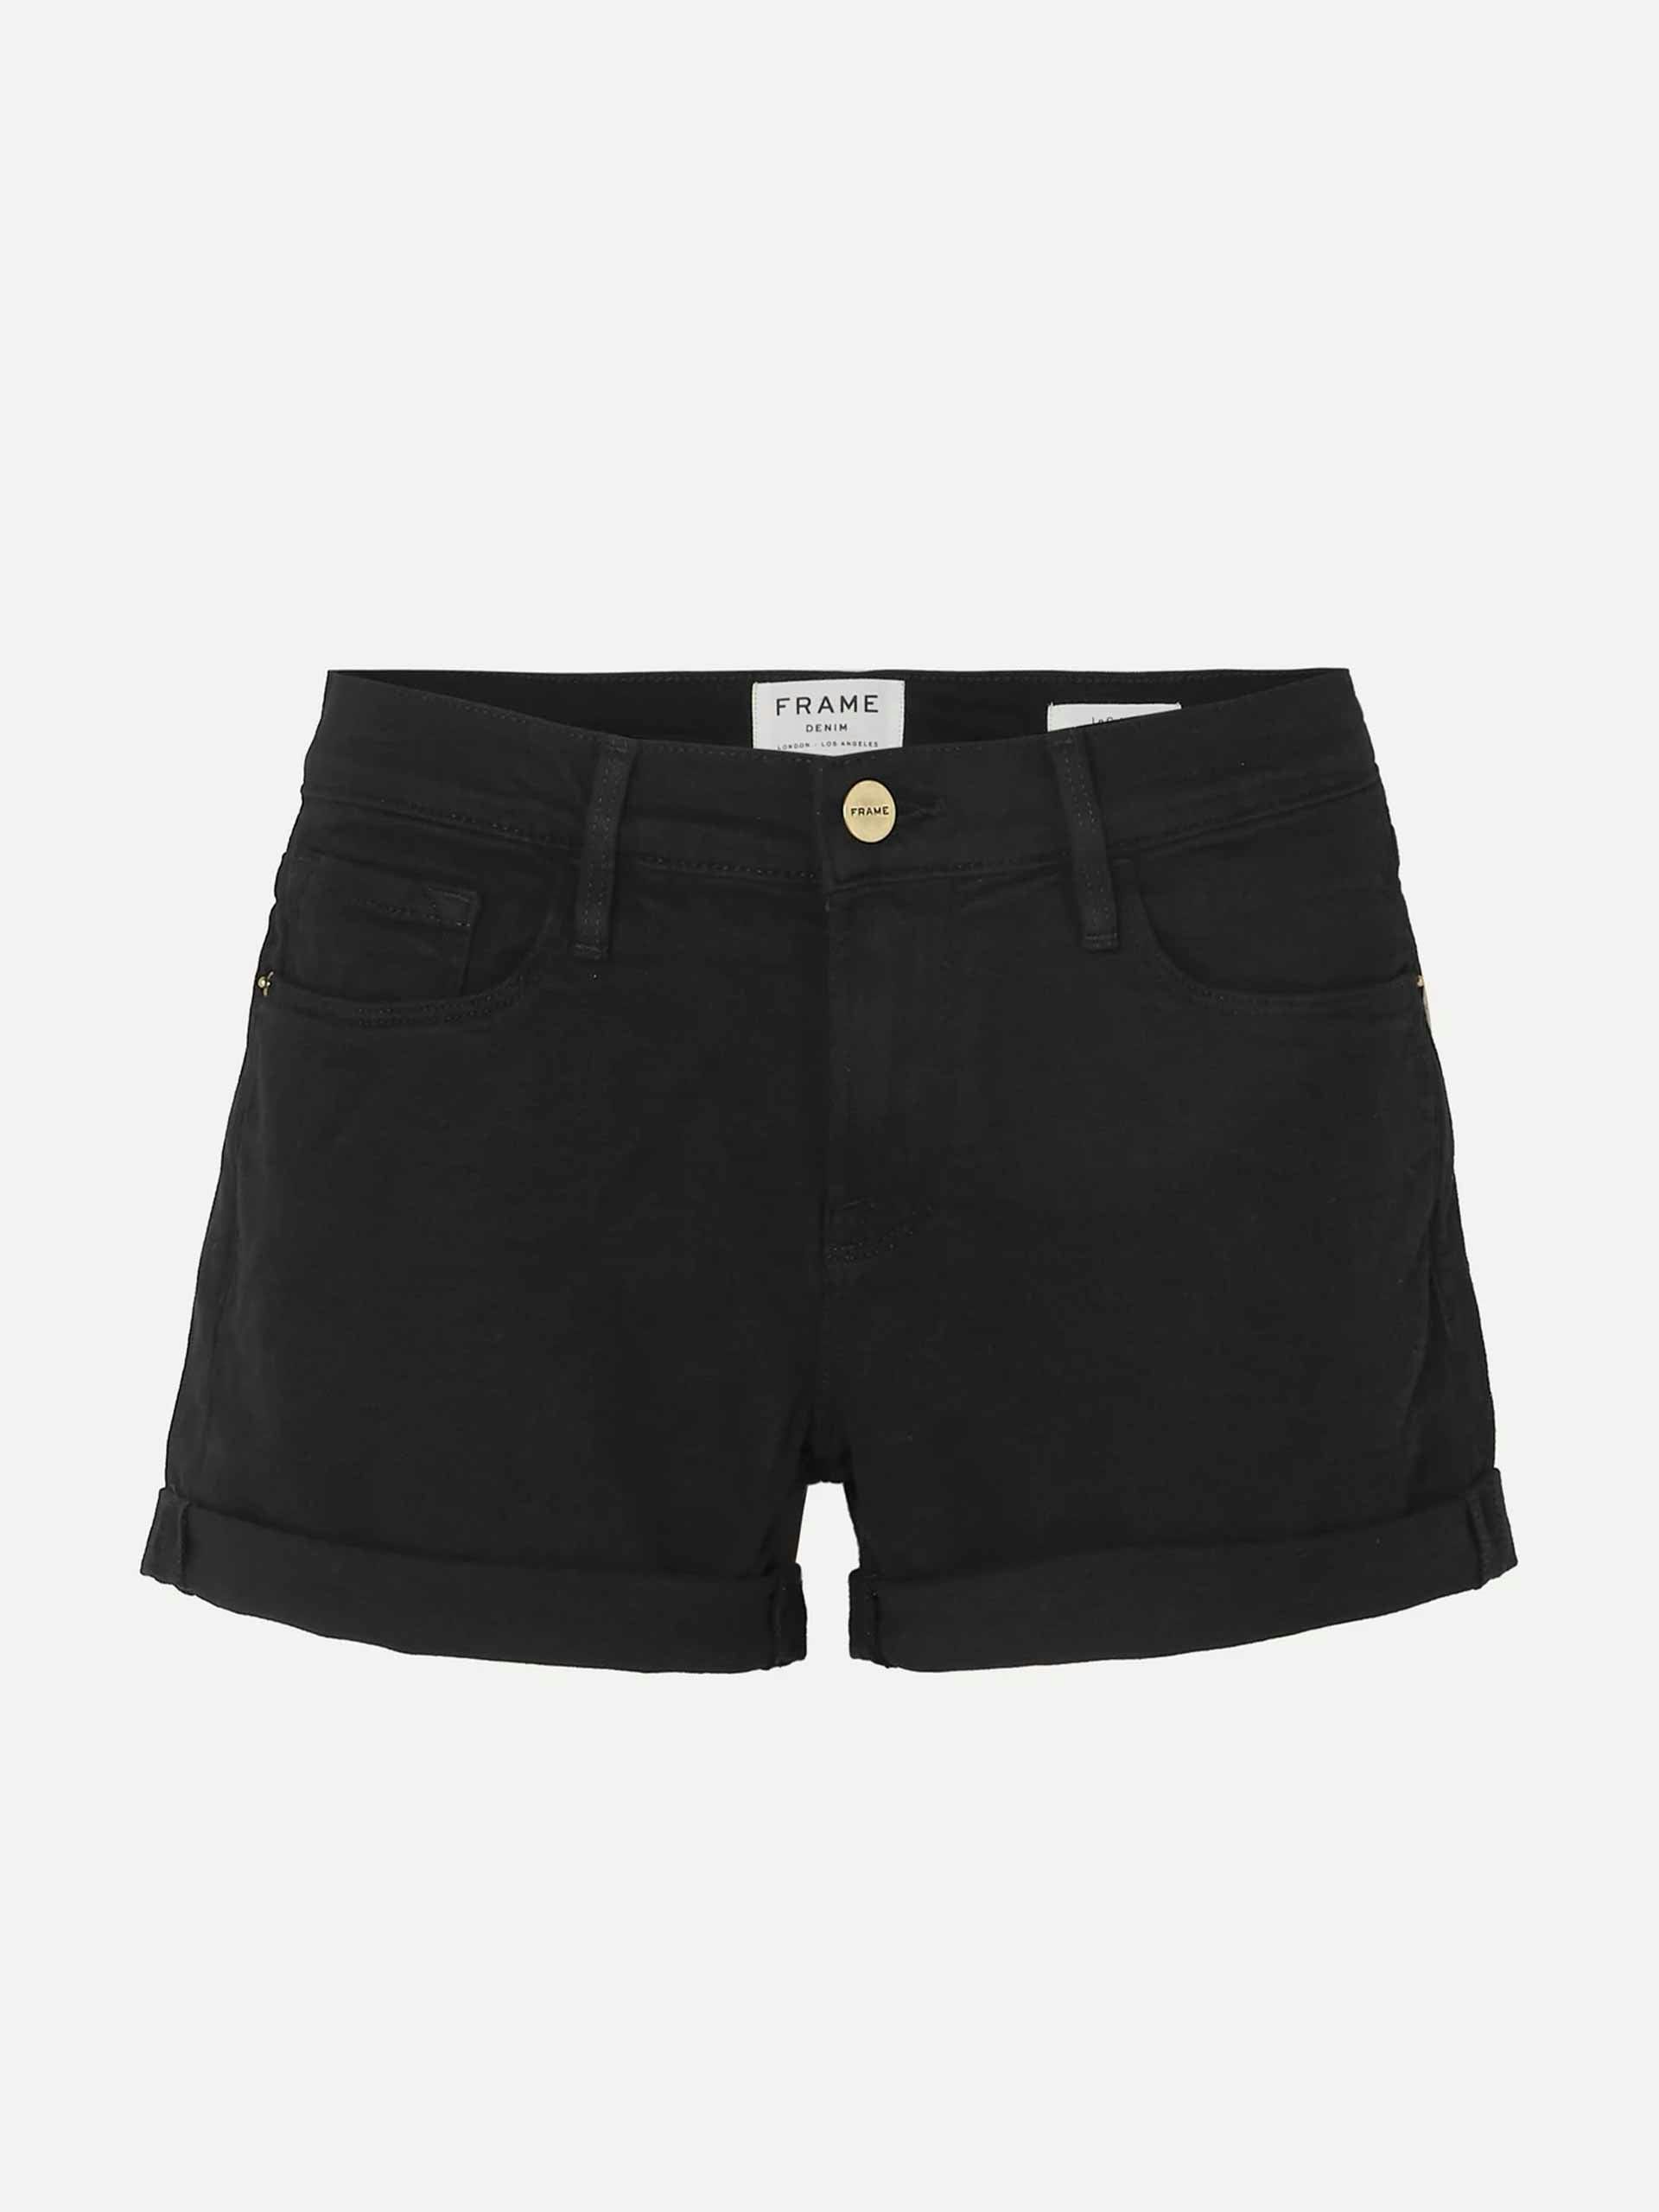 Cutoff denim shorts